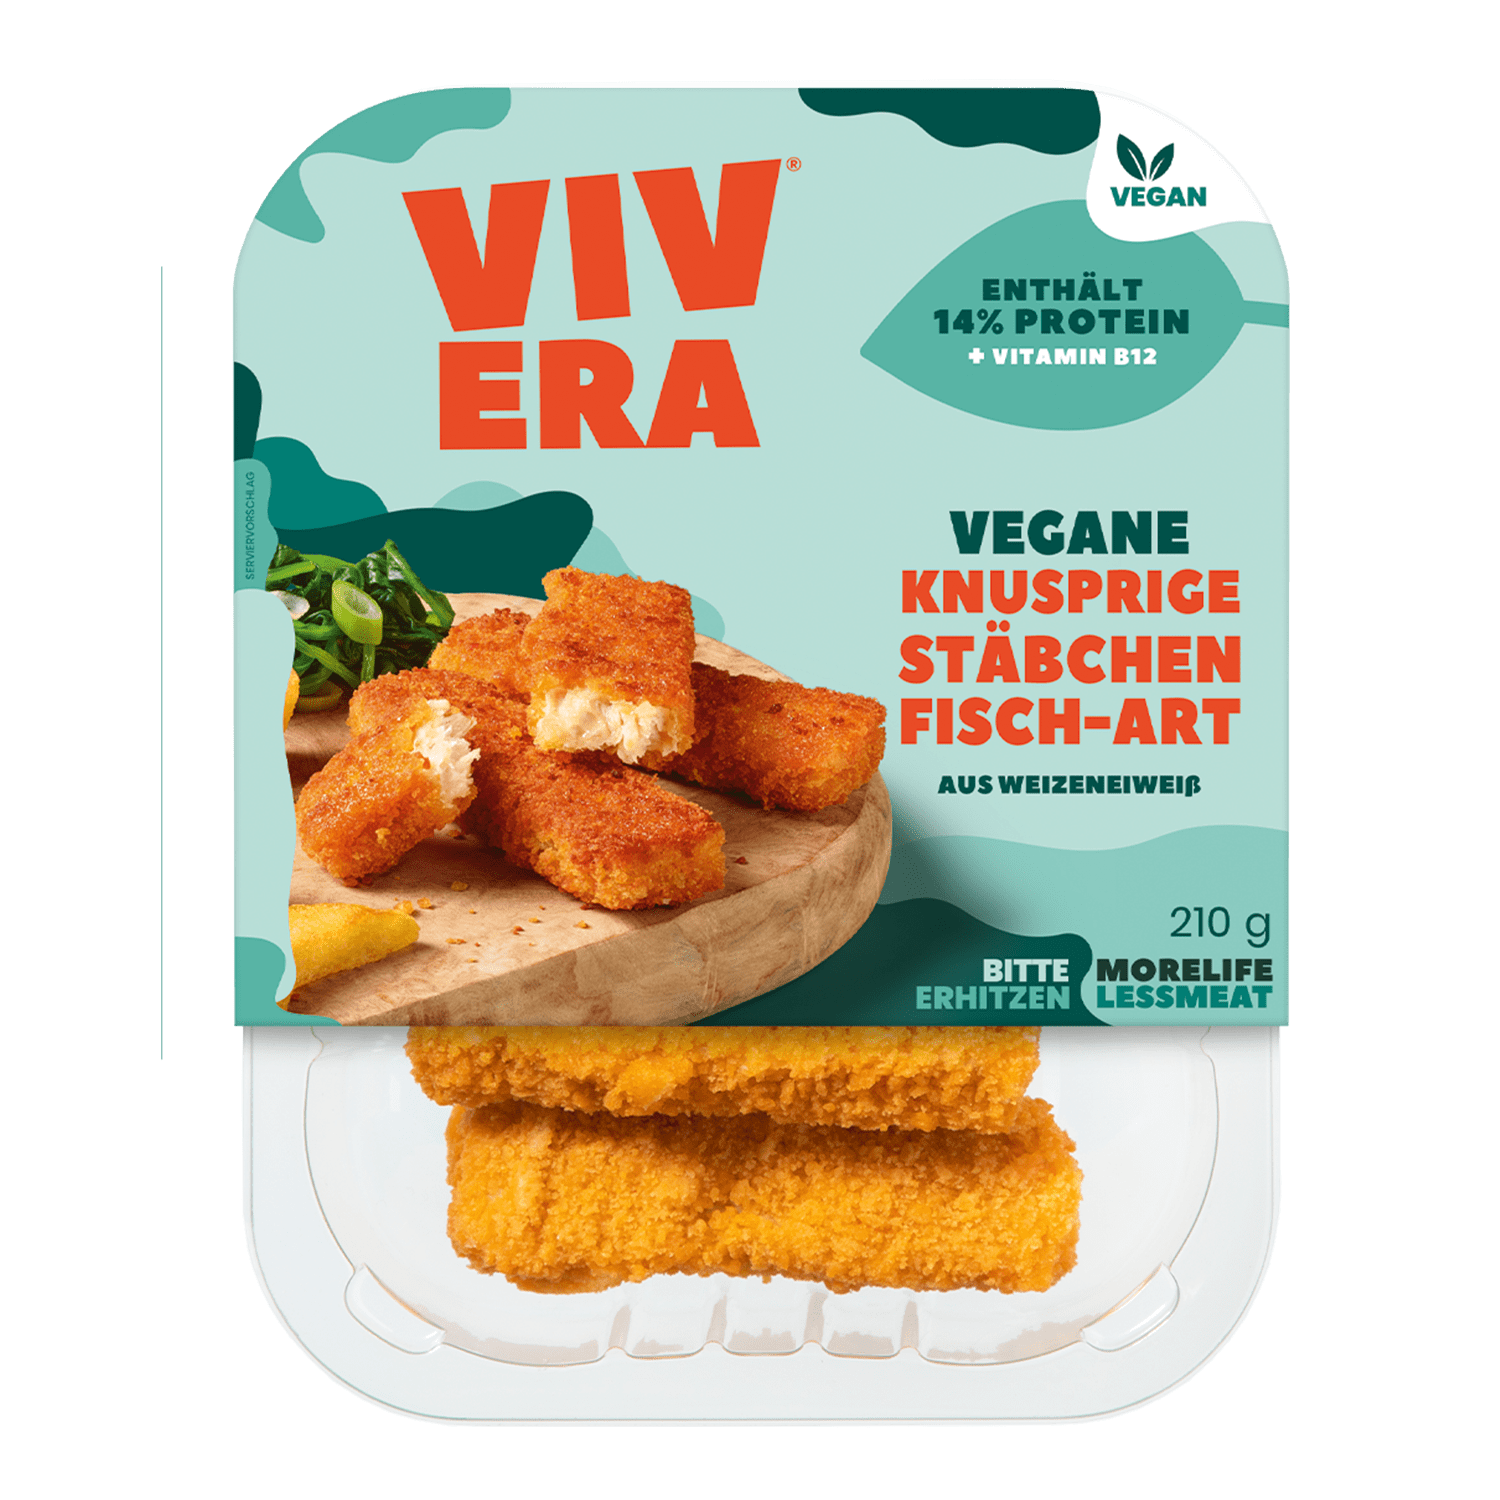 Vegane Knusprige Stäbchen Fisch-Art, 210g